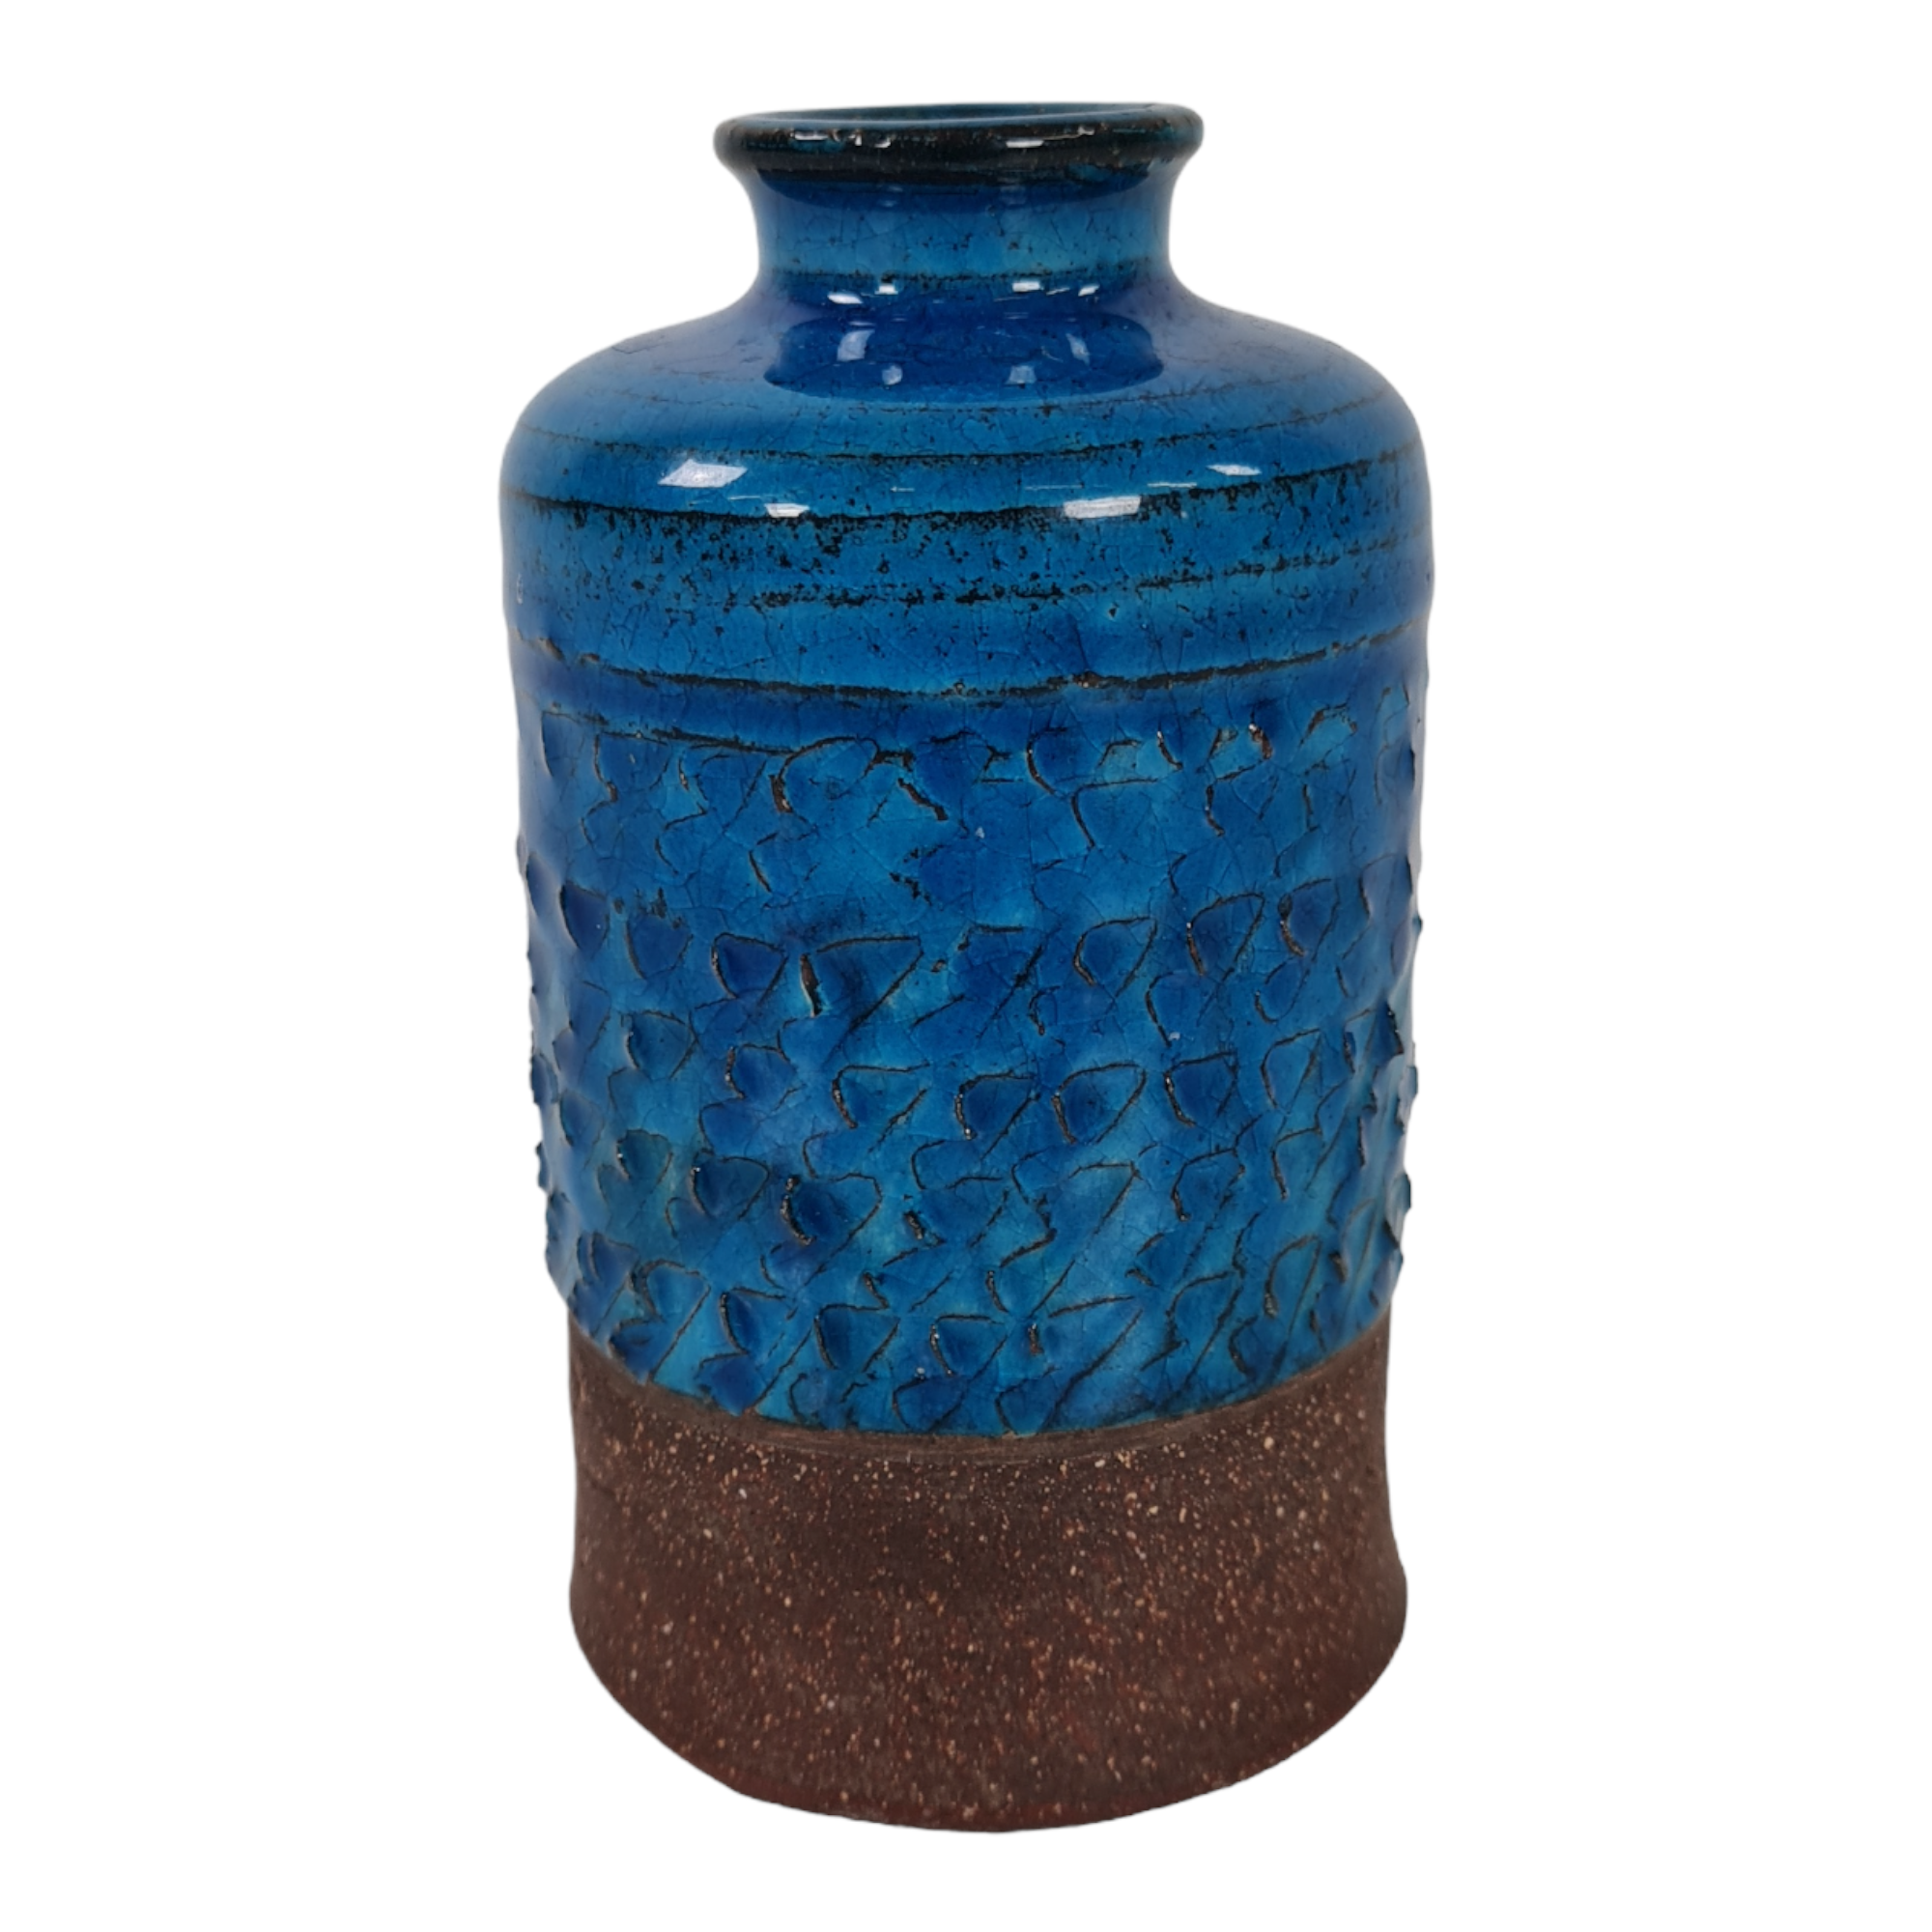 Small vase | Nils Kähler | Kähler’s Ceramic Factory | Blue-glazed ceramics